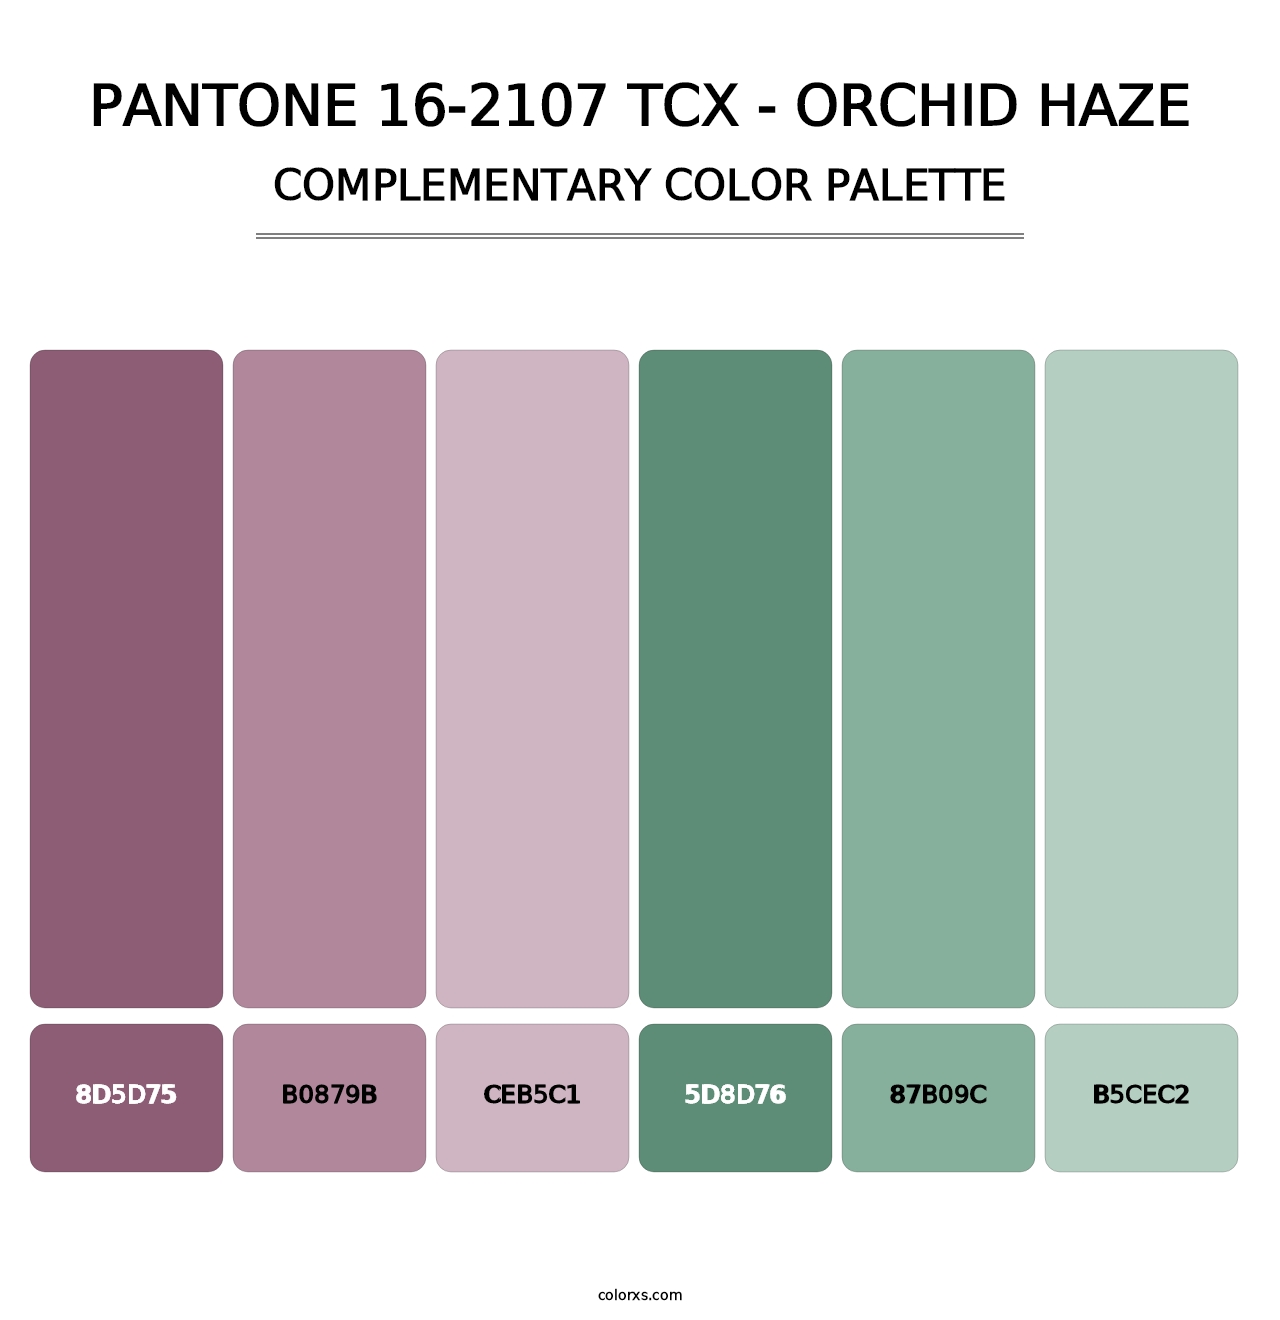 PANTONE 16-2107 TCX - Orchid Haze - Complementary Color Palette